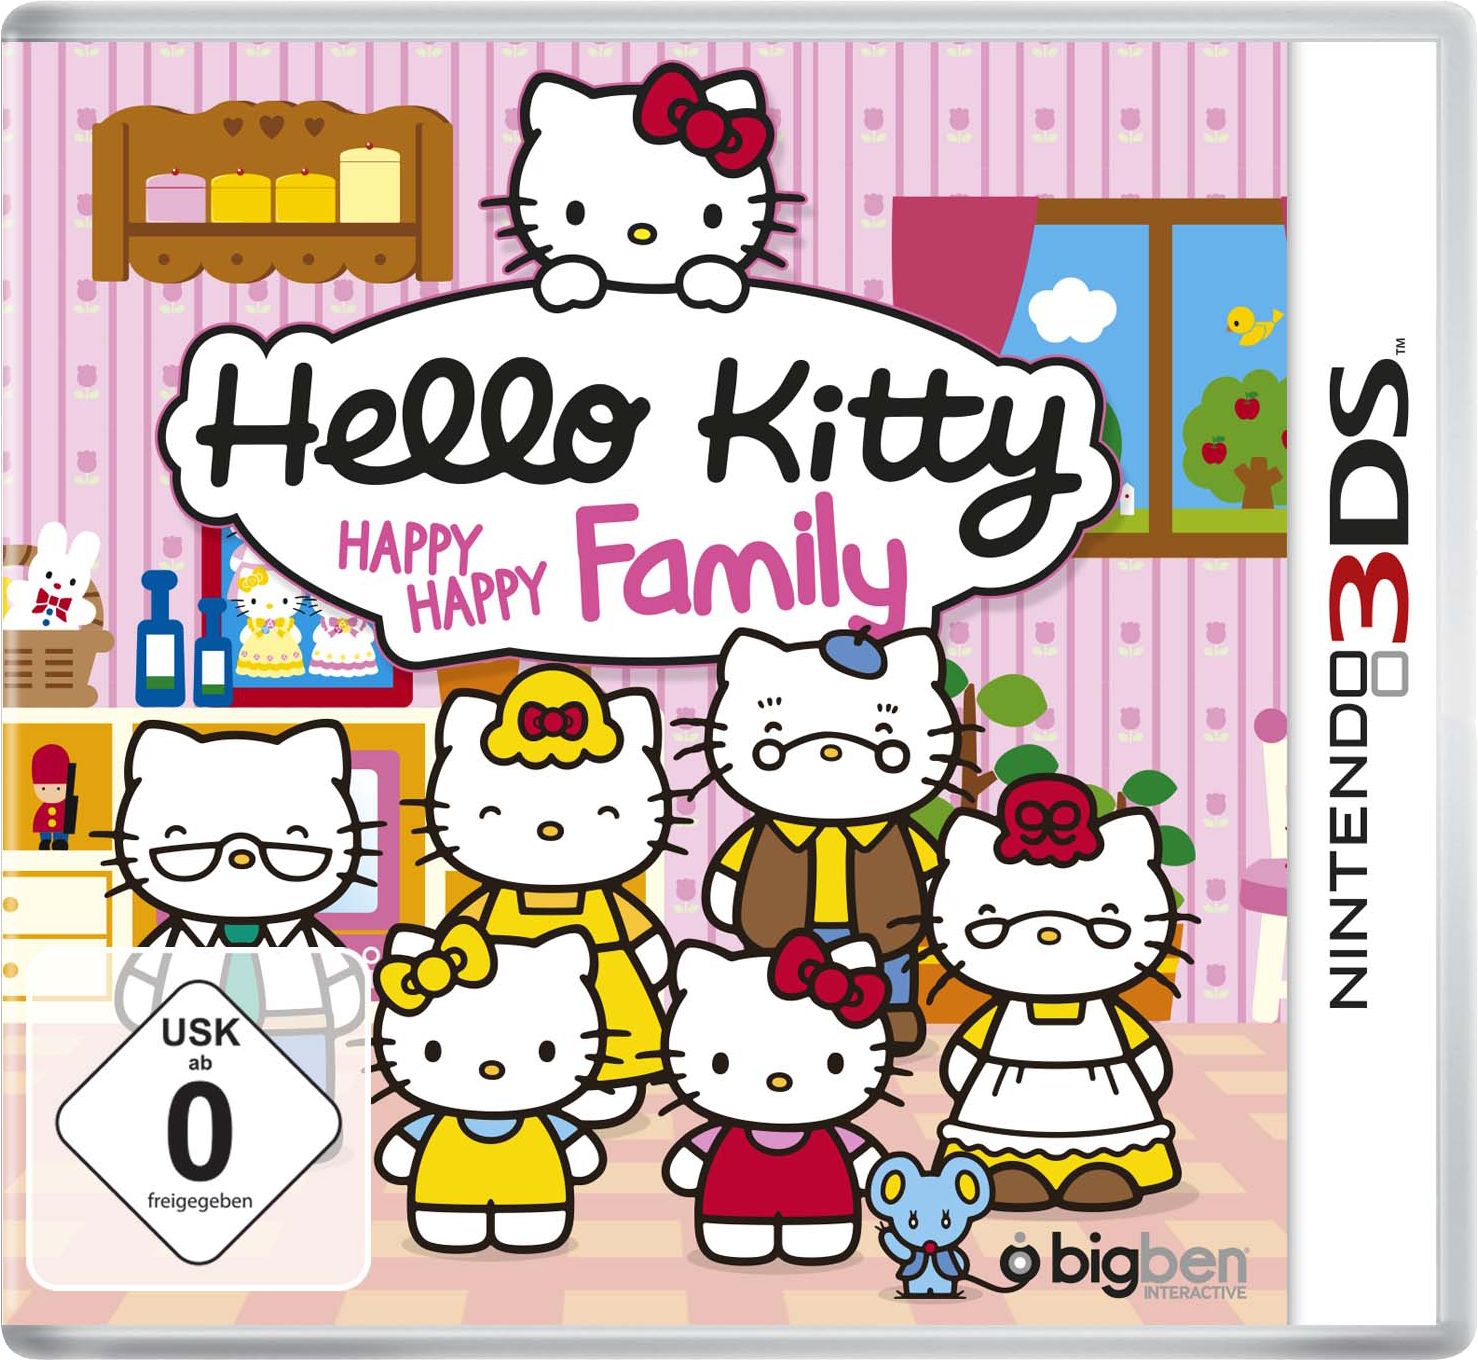 Hello Kitty Happy Happy Family, il trailer ufficiale